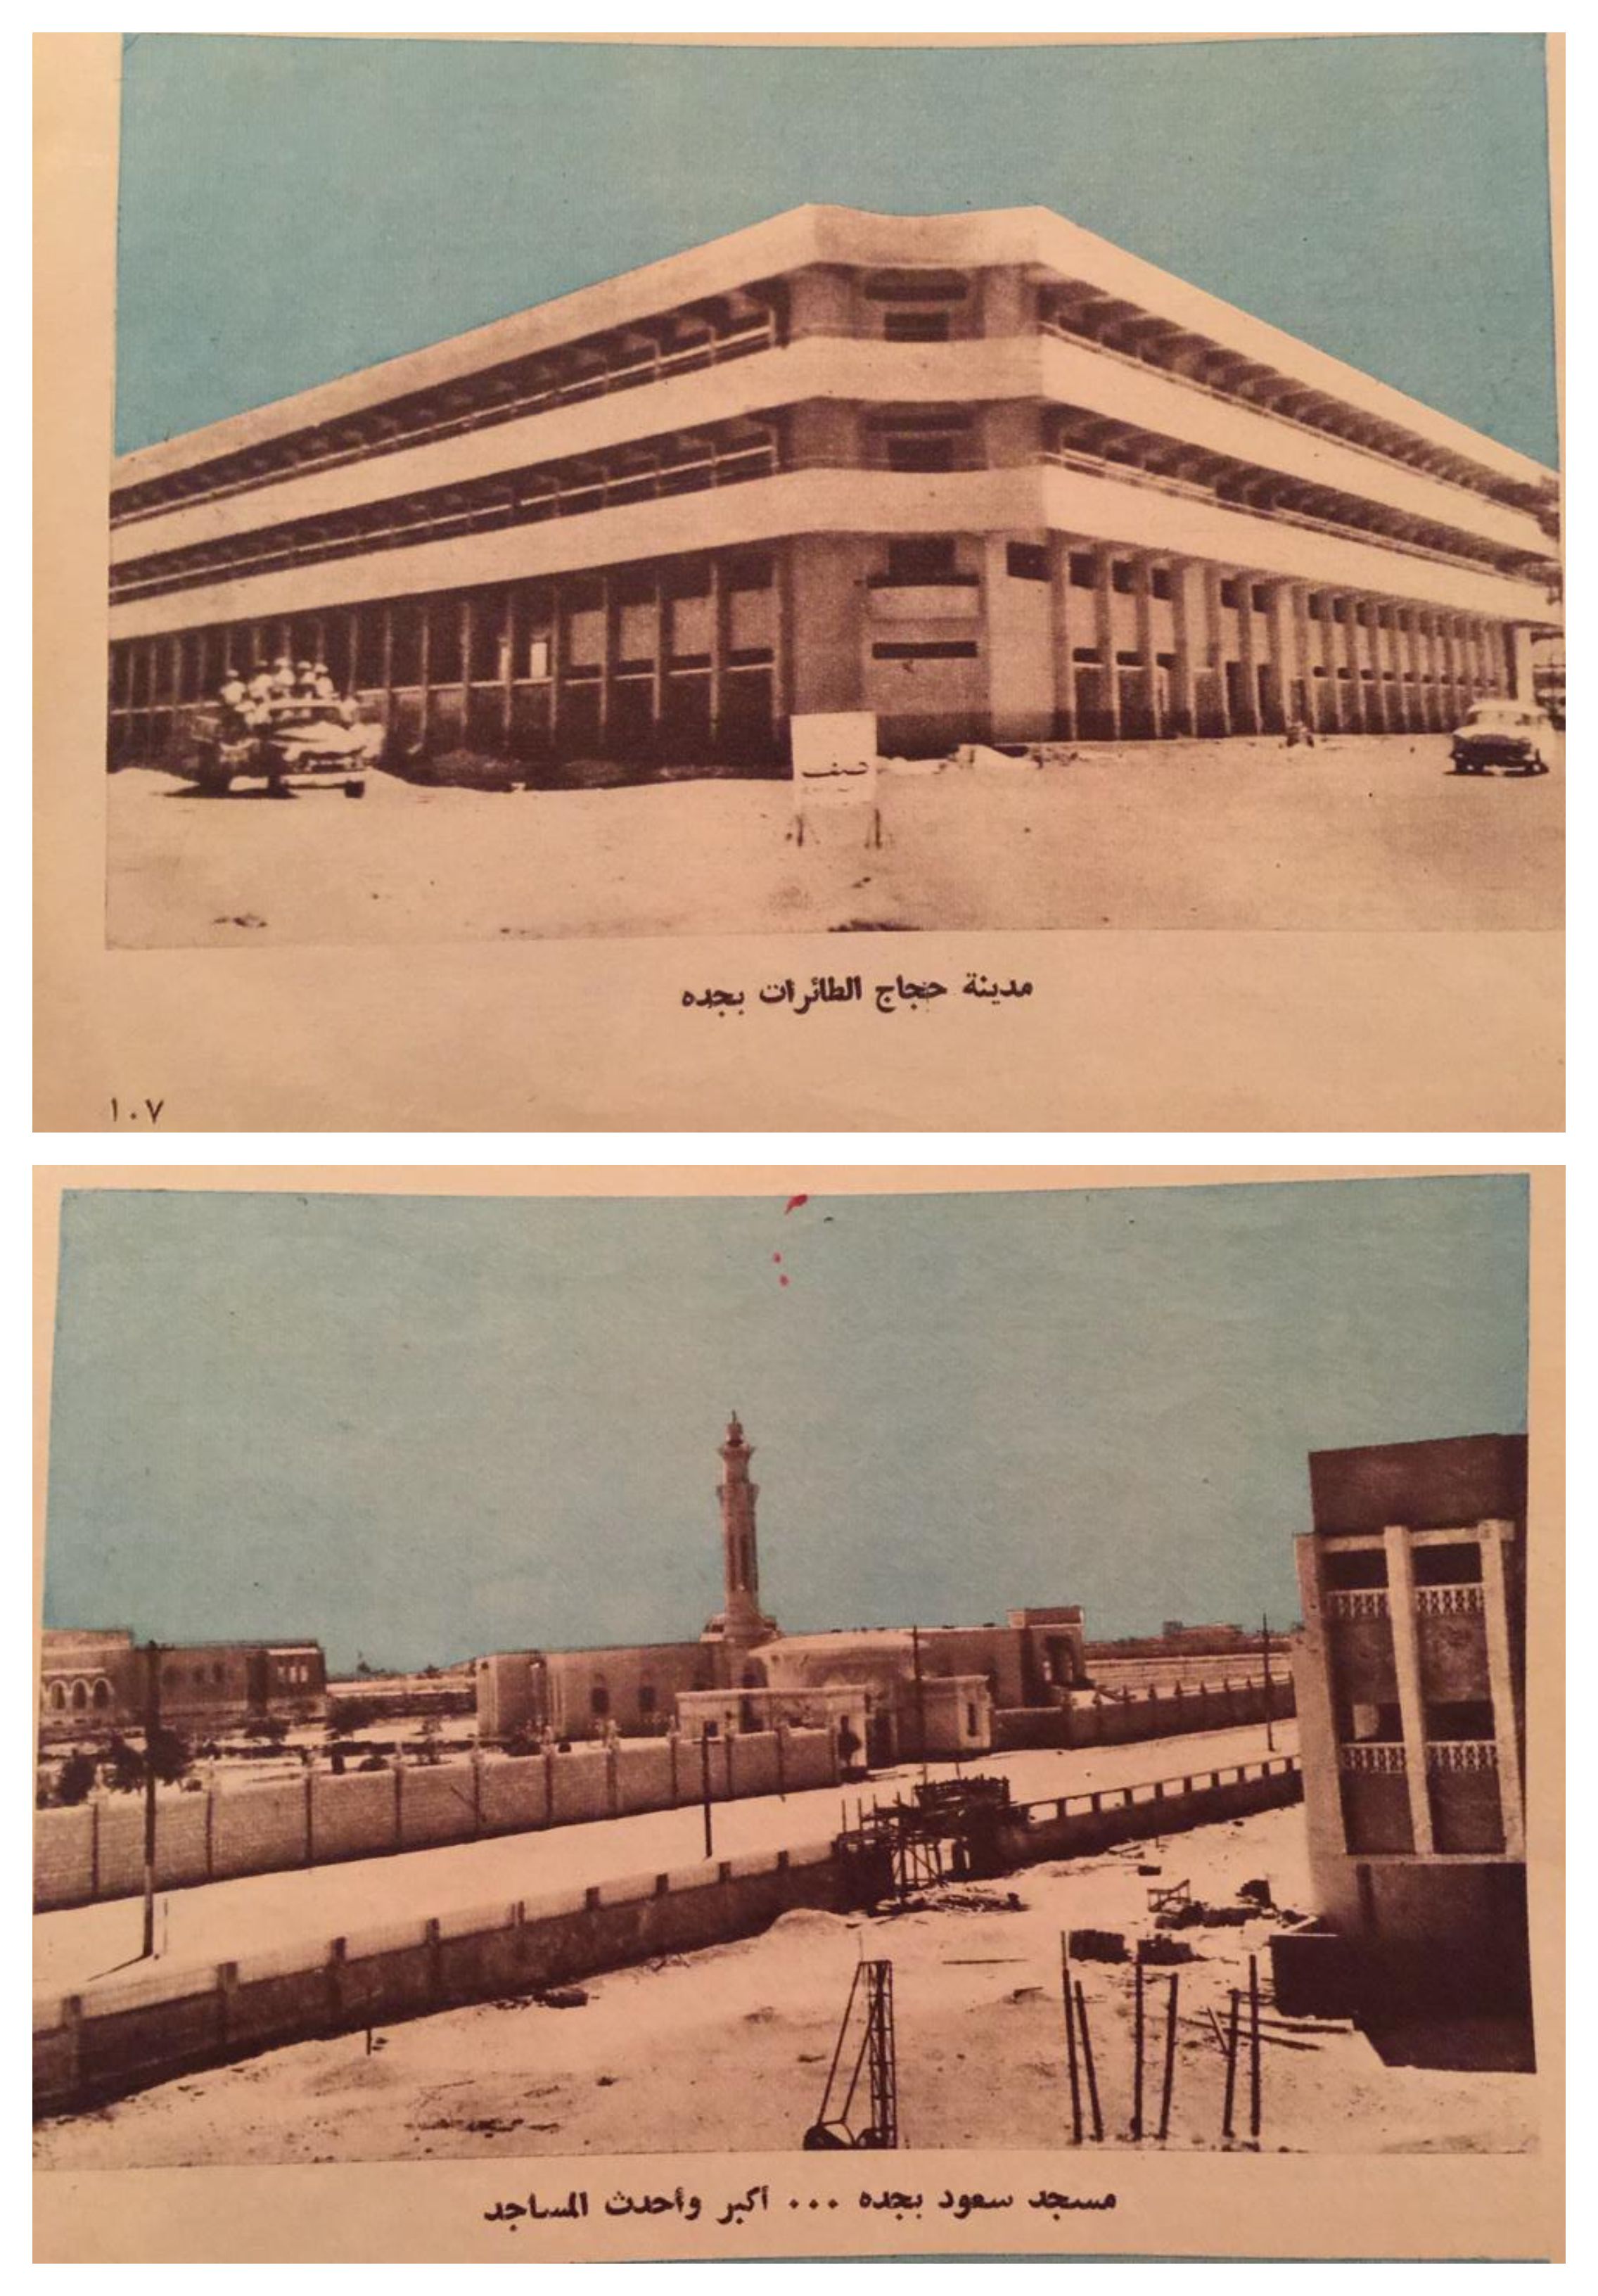 مدينة الحجاج ومسجد الملك سعود في قصر خزام الذي بنته شركة صفا